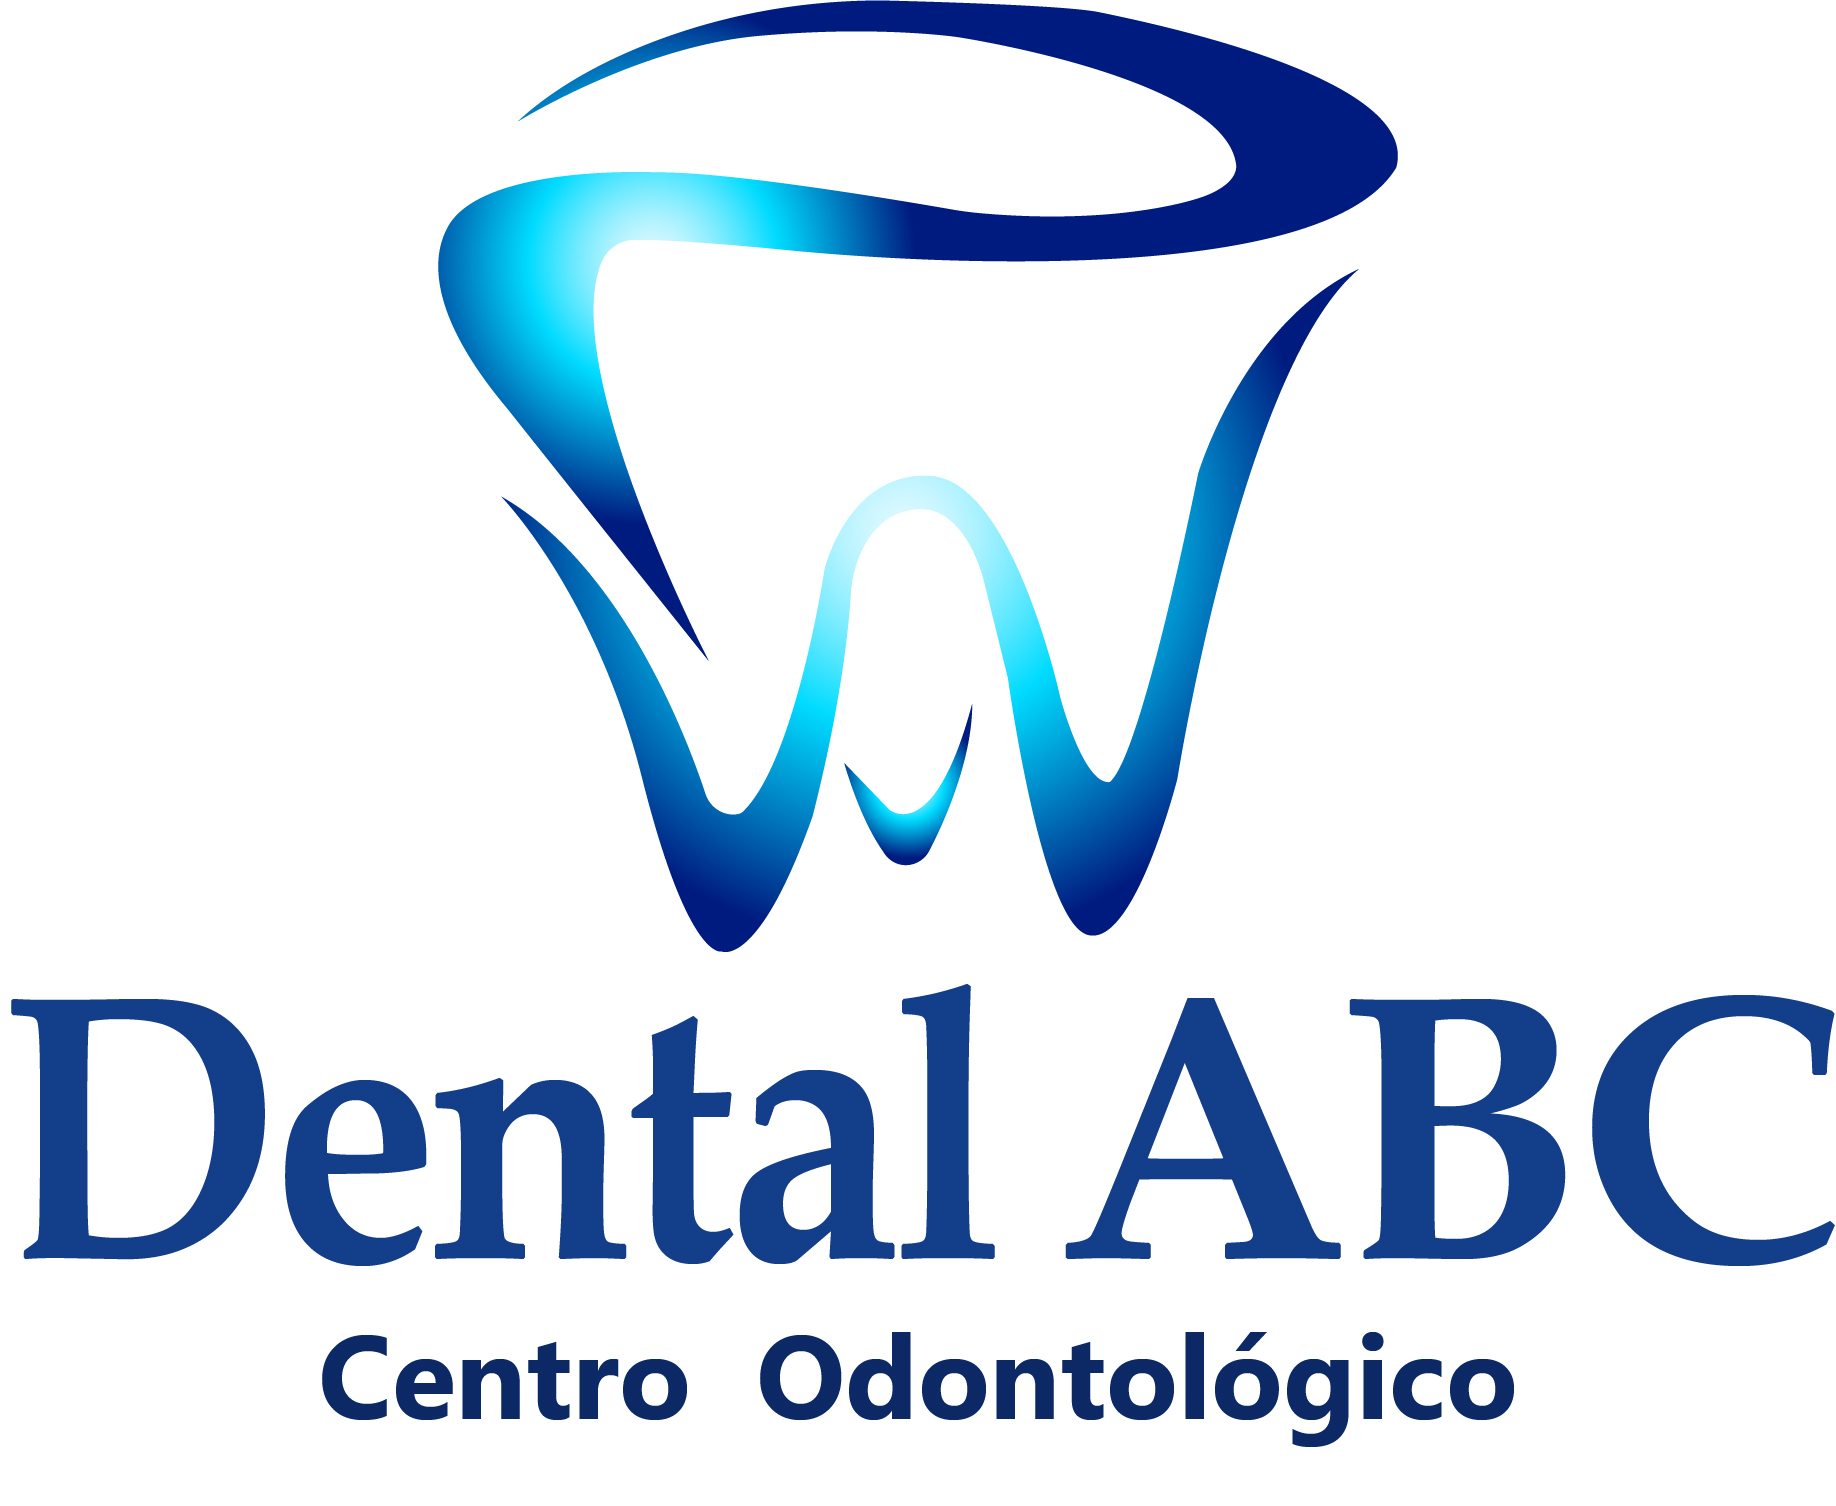 Dental ABC